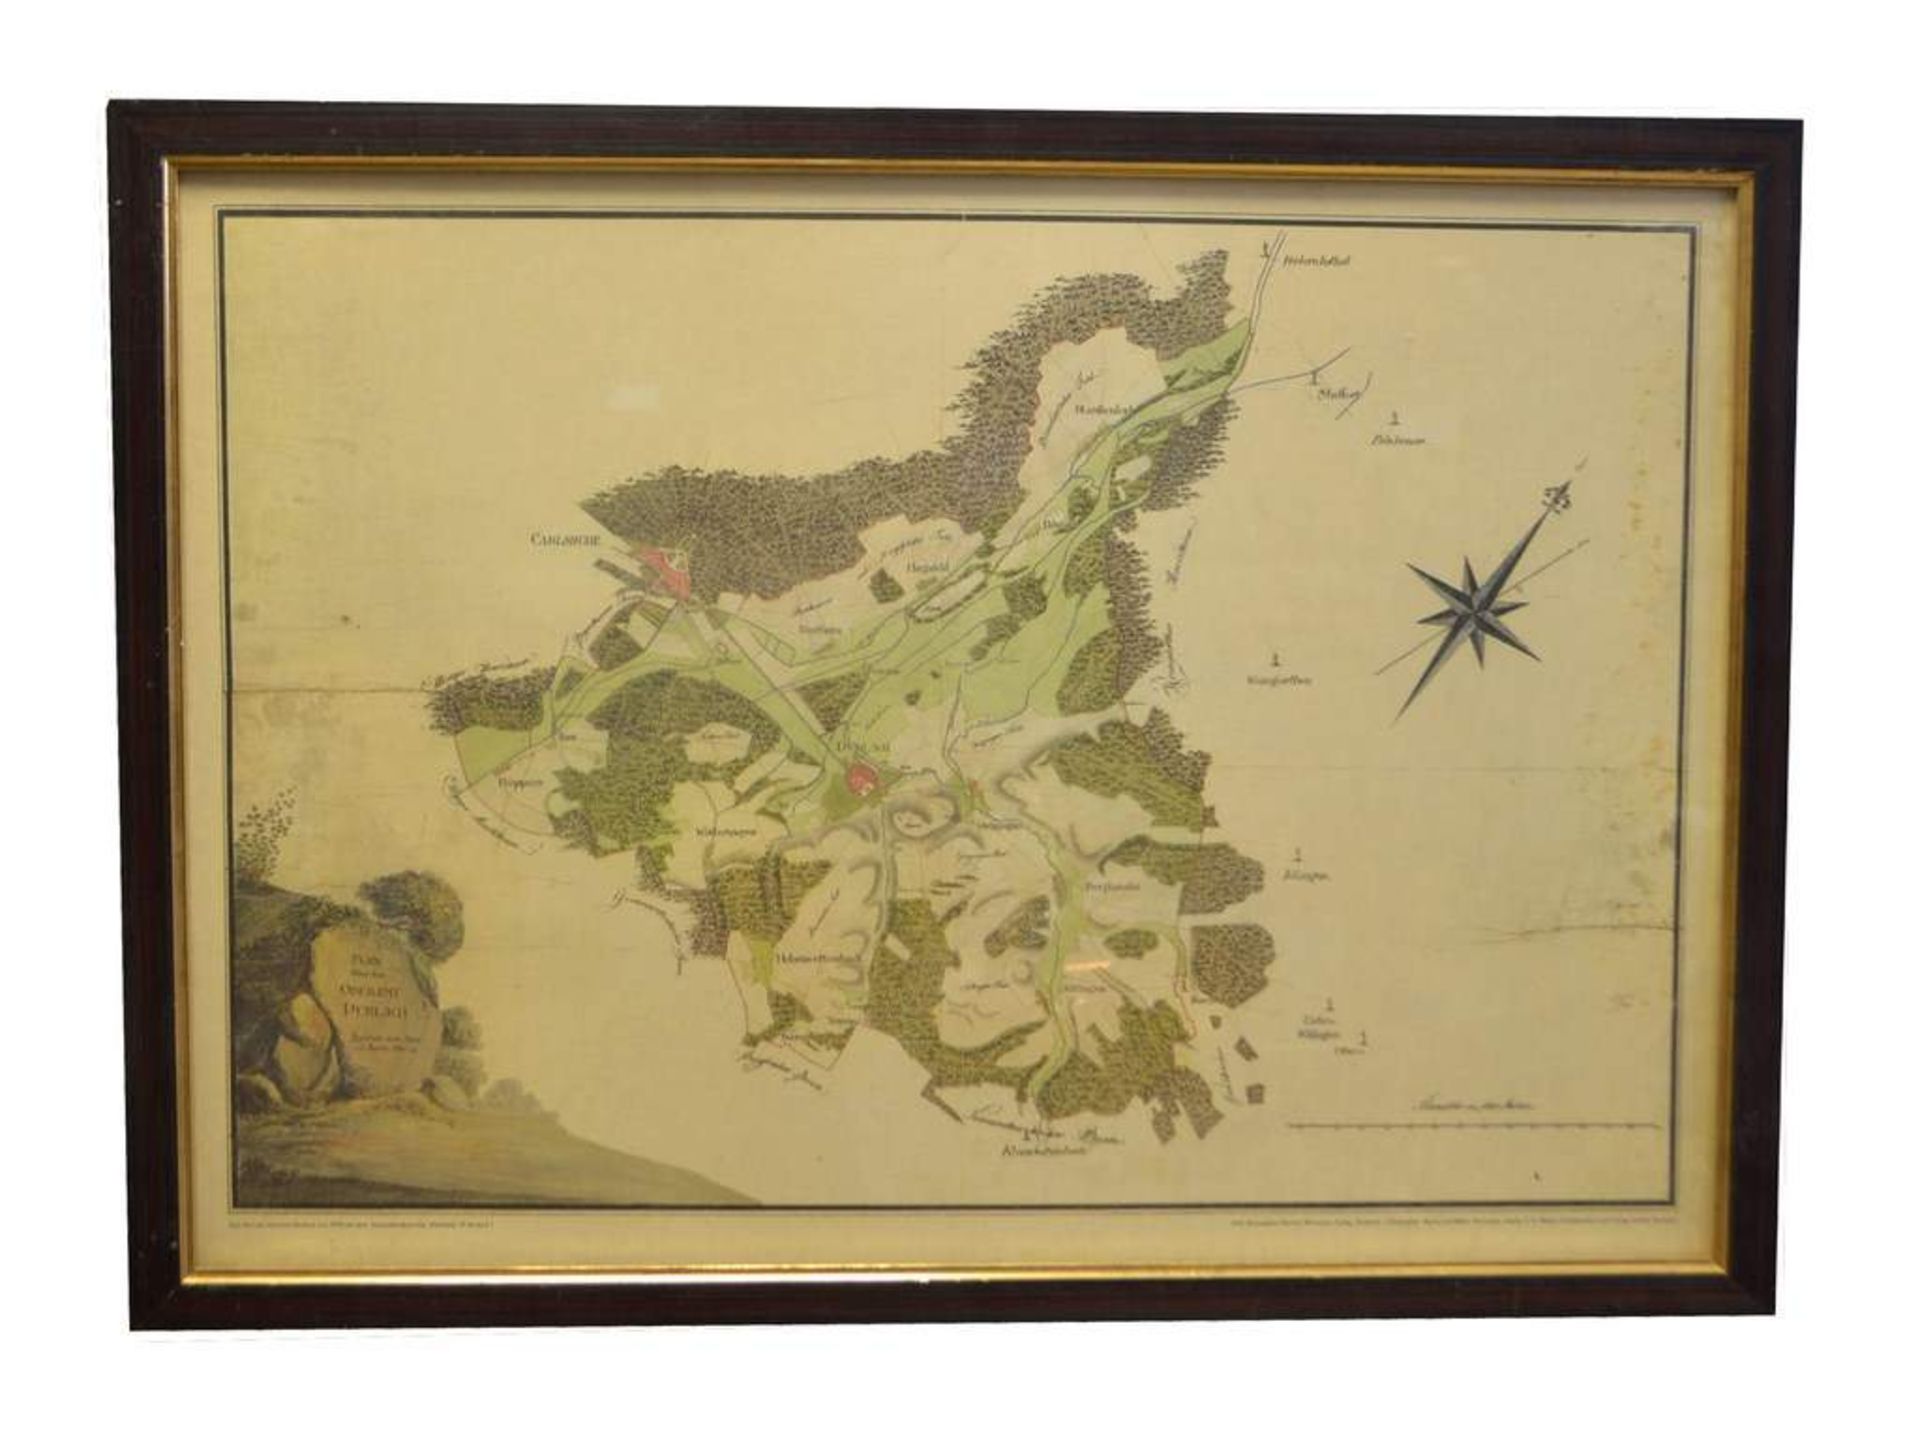 Lageplan Durlach und Umgebung, teilweise coloriert, im Rahmen, 54 X 74 cm, um 1900